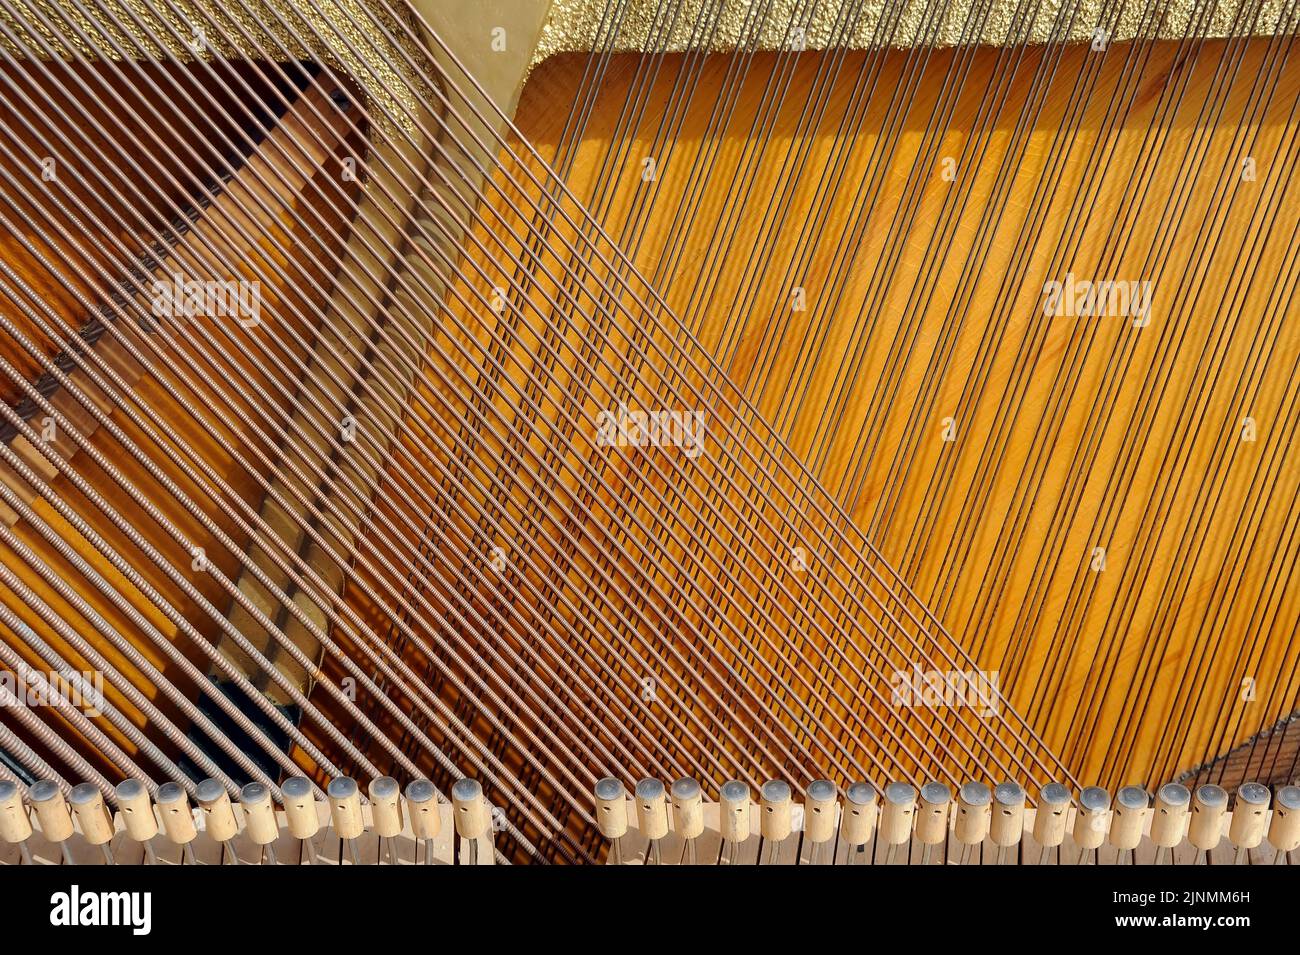 Primo piano dell'interno del pianoforte a coda che mostra la corda in posizione verticale Foto Stock